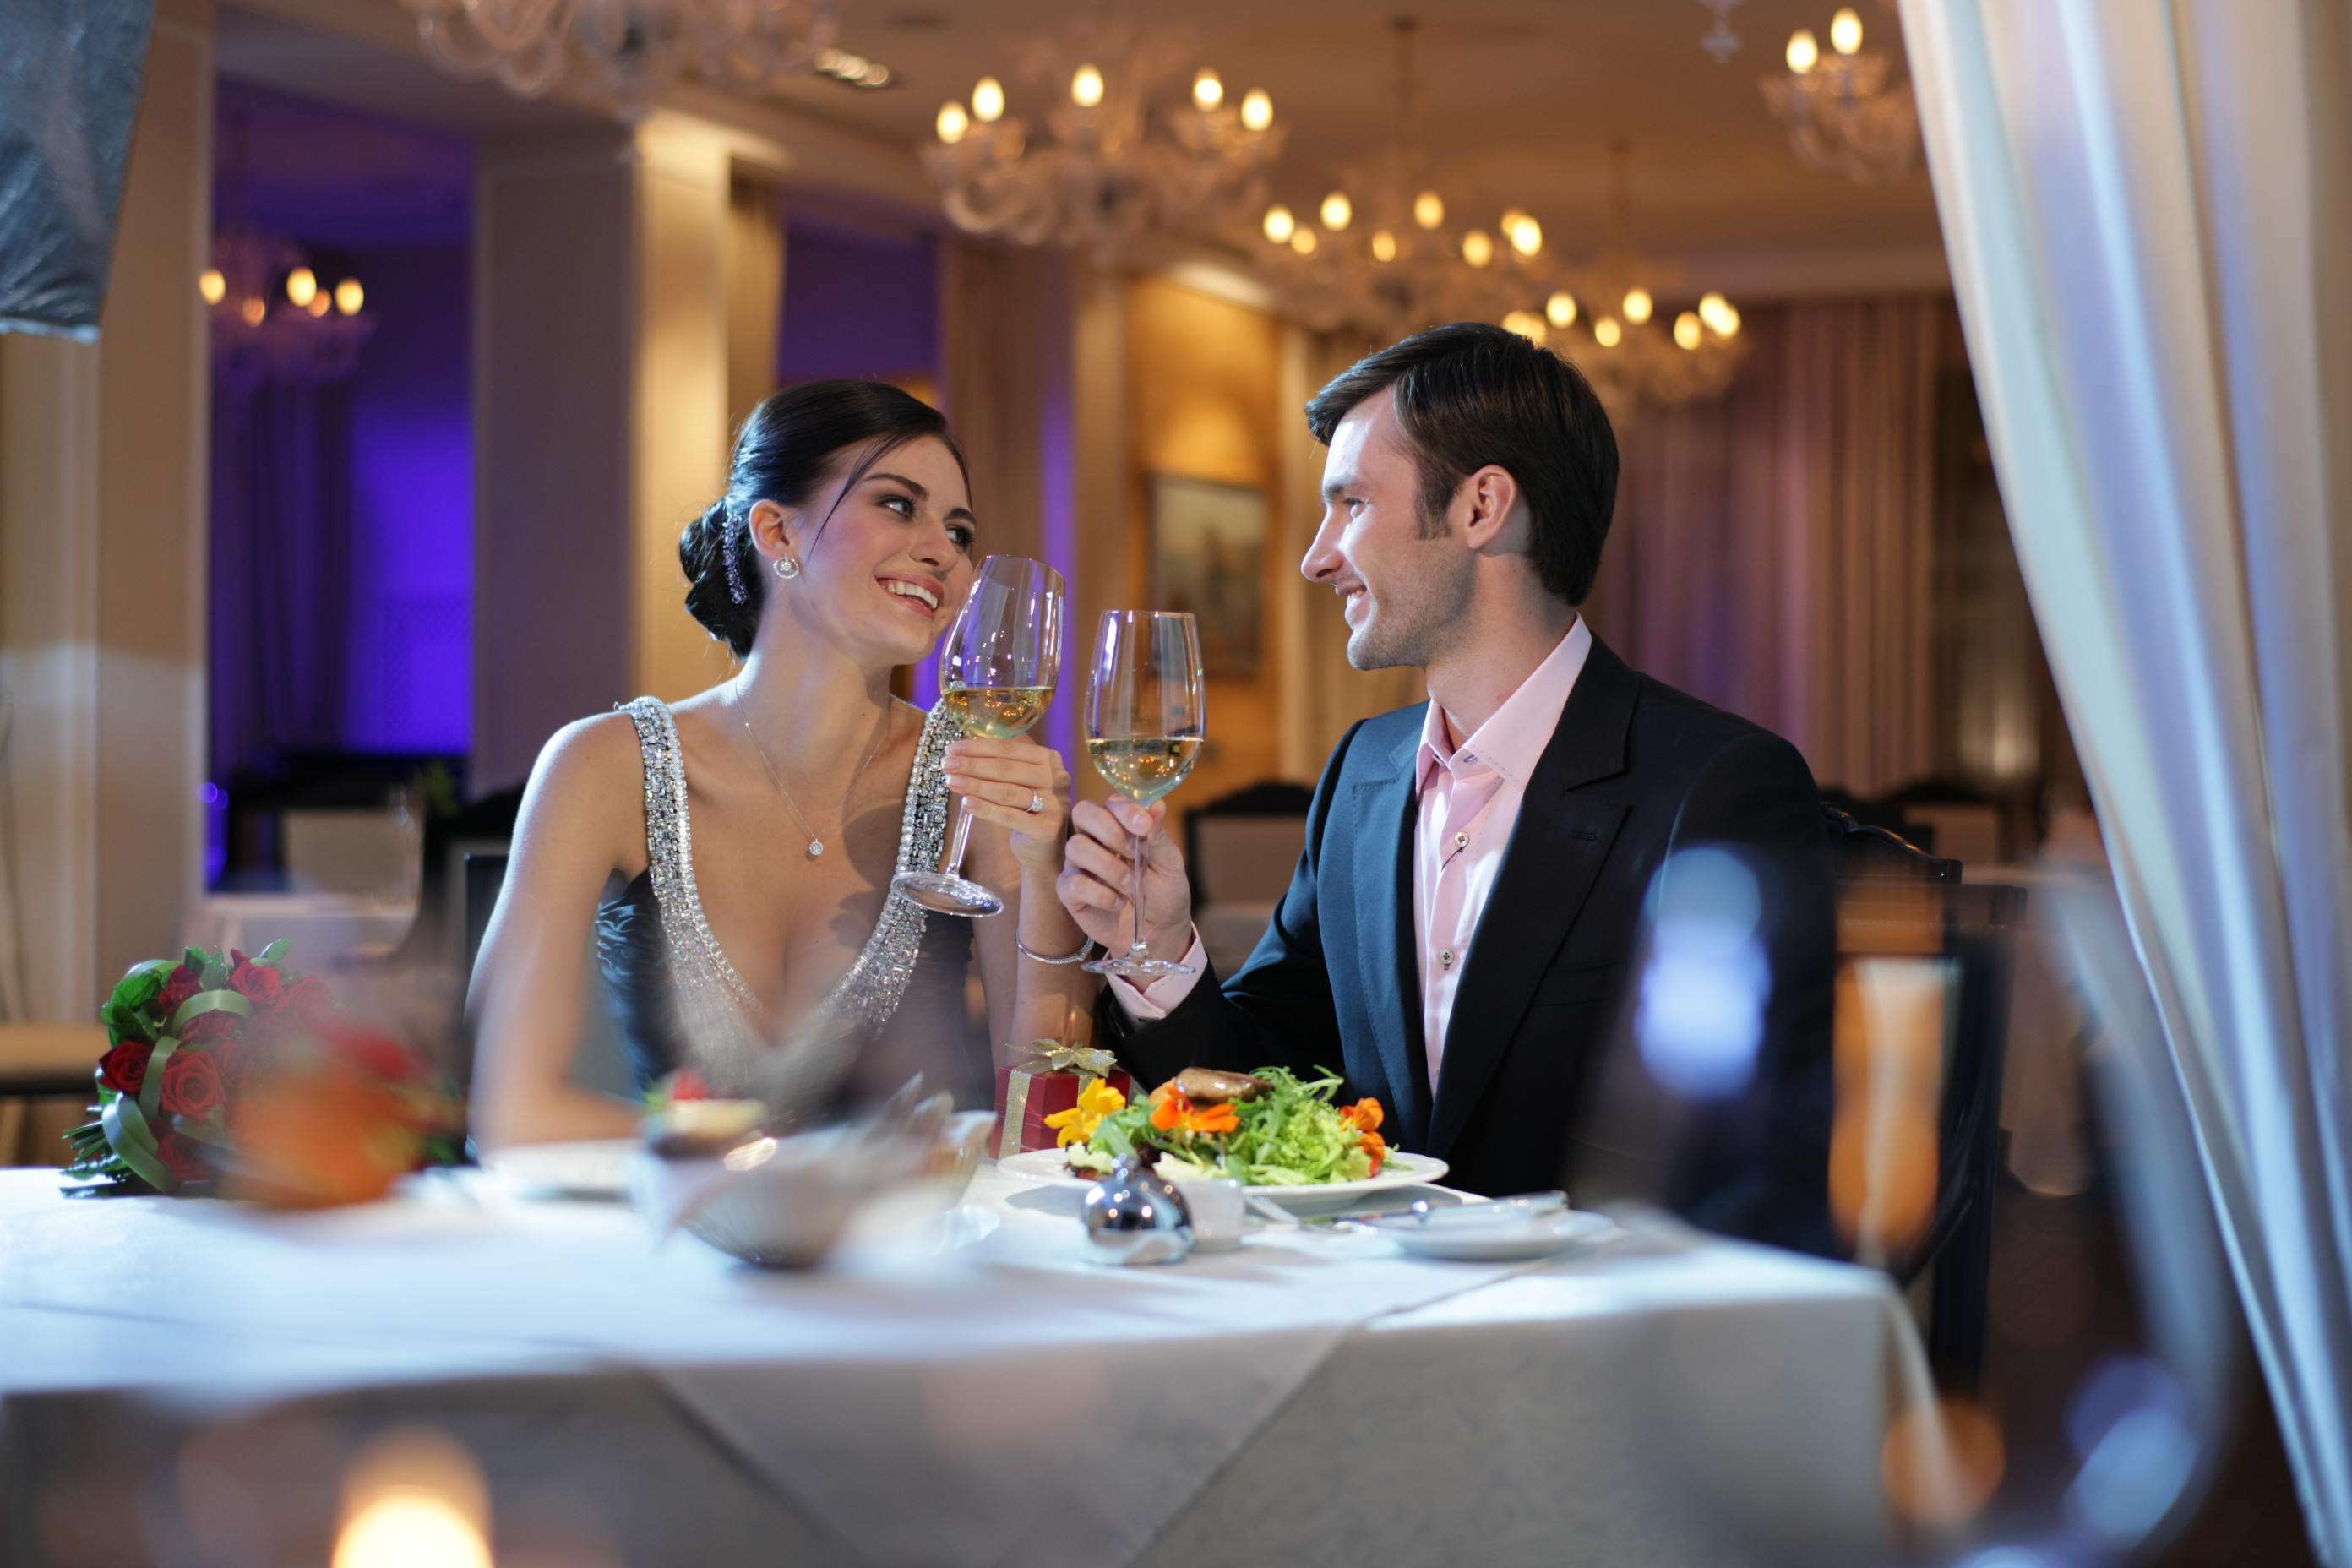 Ужин в ресторане на двоих. Романтический ужин в кафе. Ужин в ресторане. Пара в ресторане. Мужчина и женщина в ресторане.